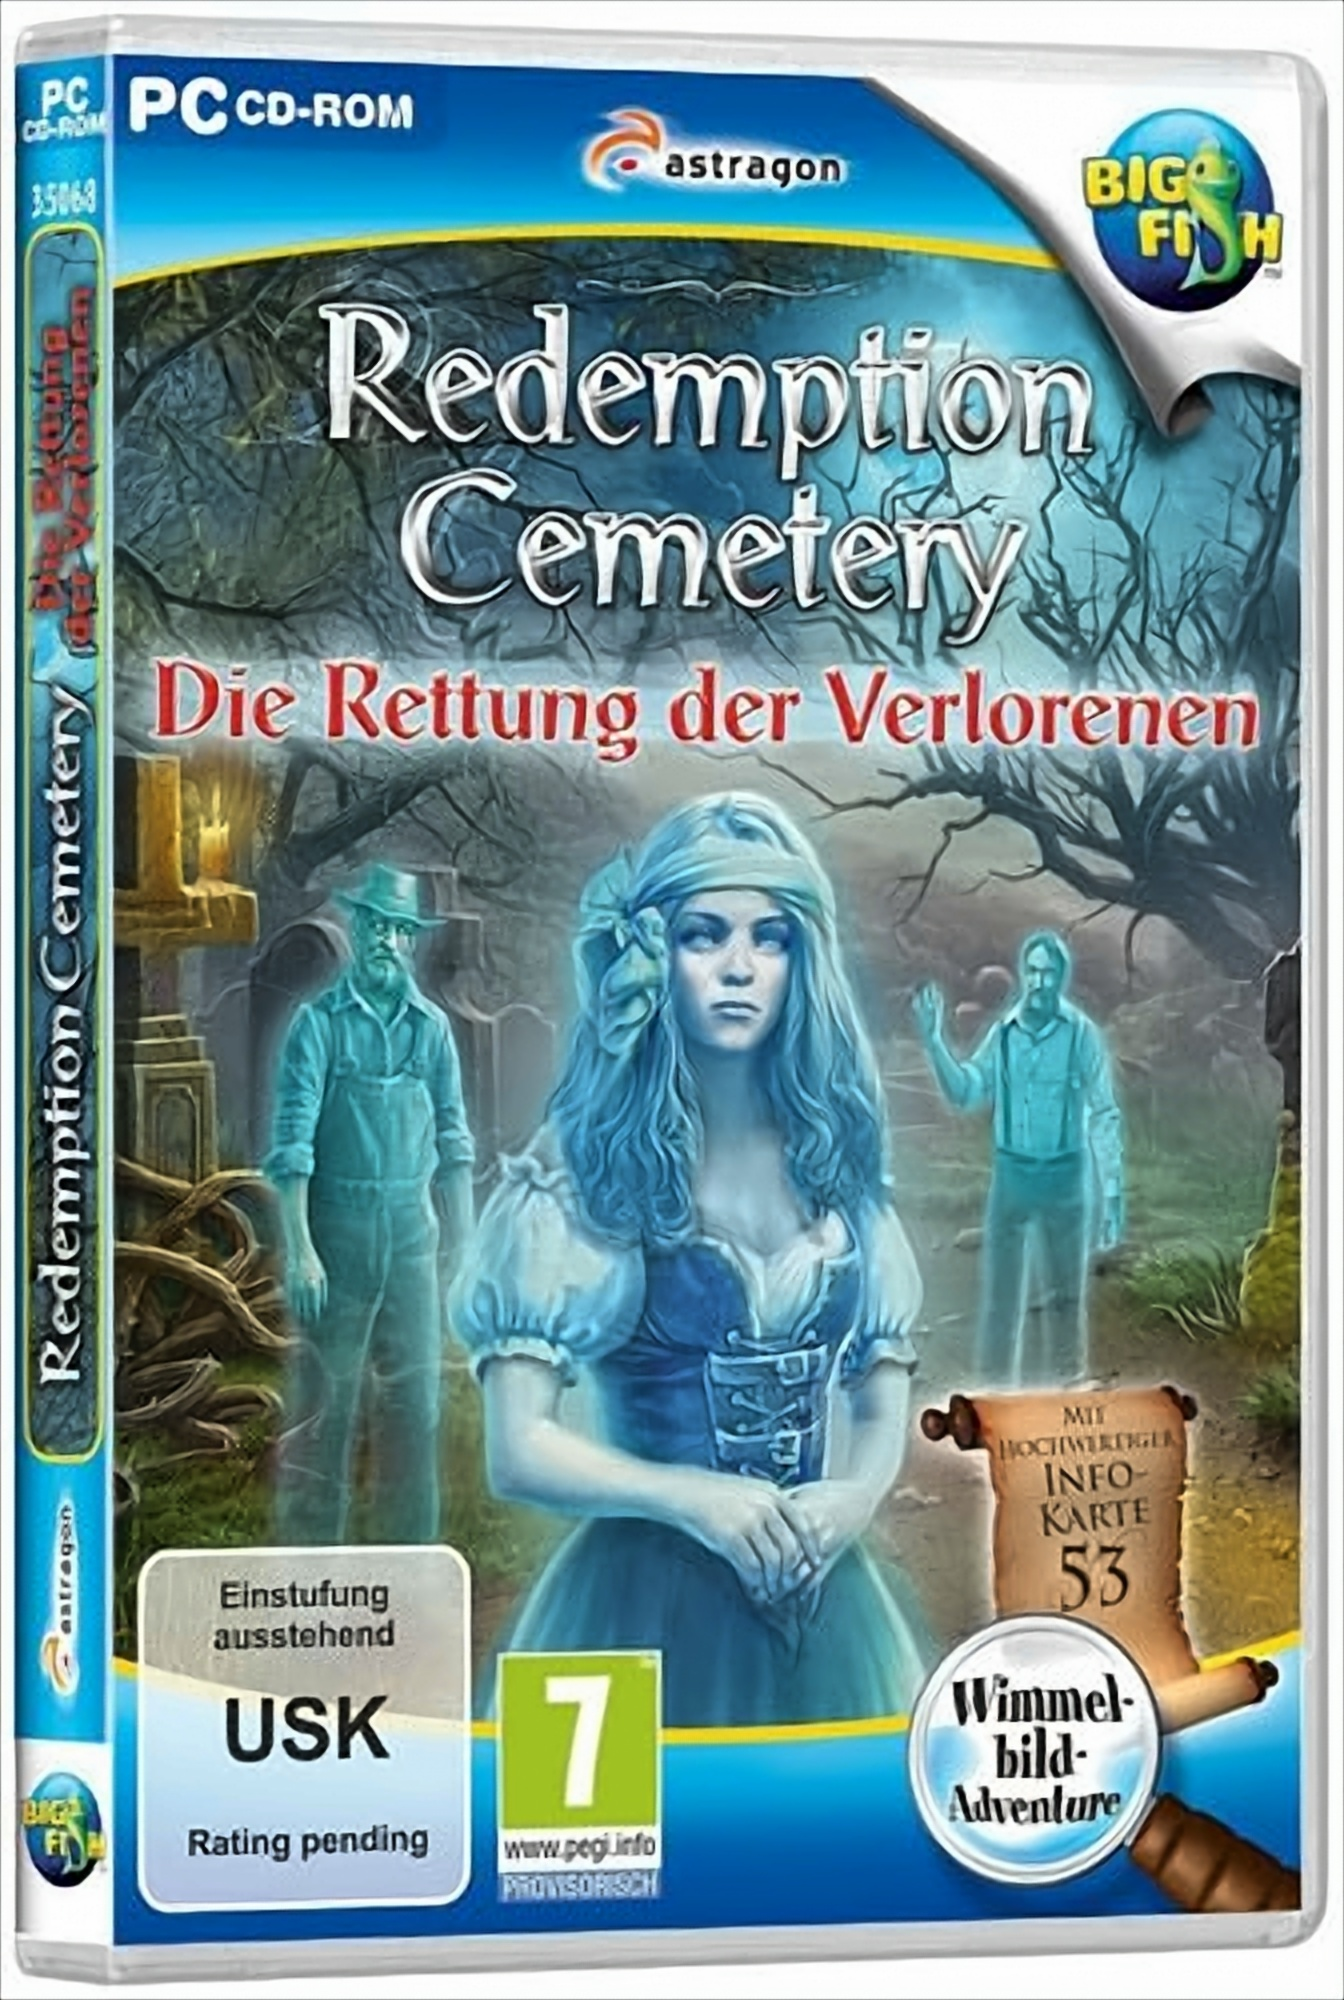 Verlorenen - Die Rettung [PC] Cemetery: Redemption der